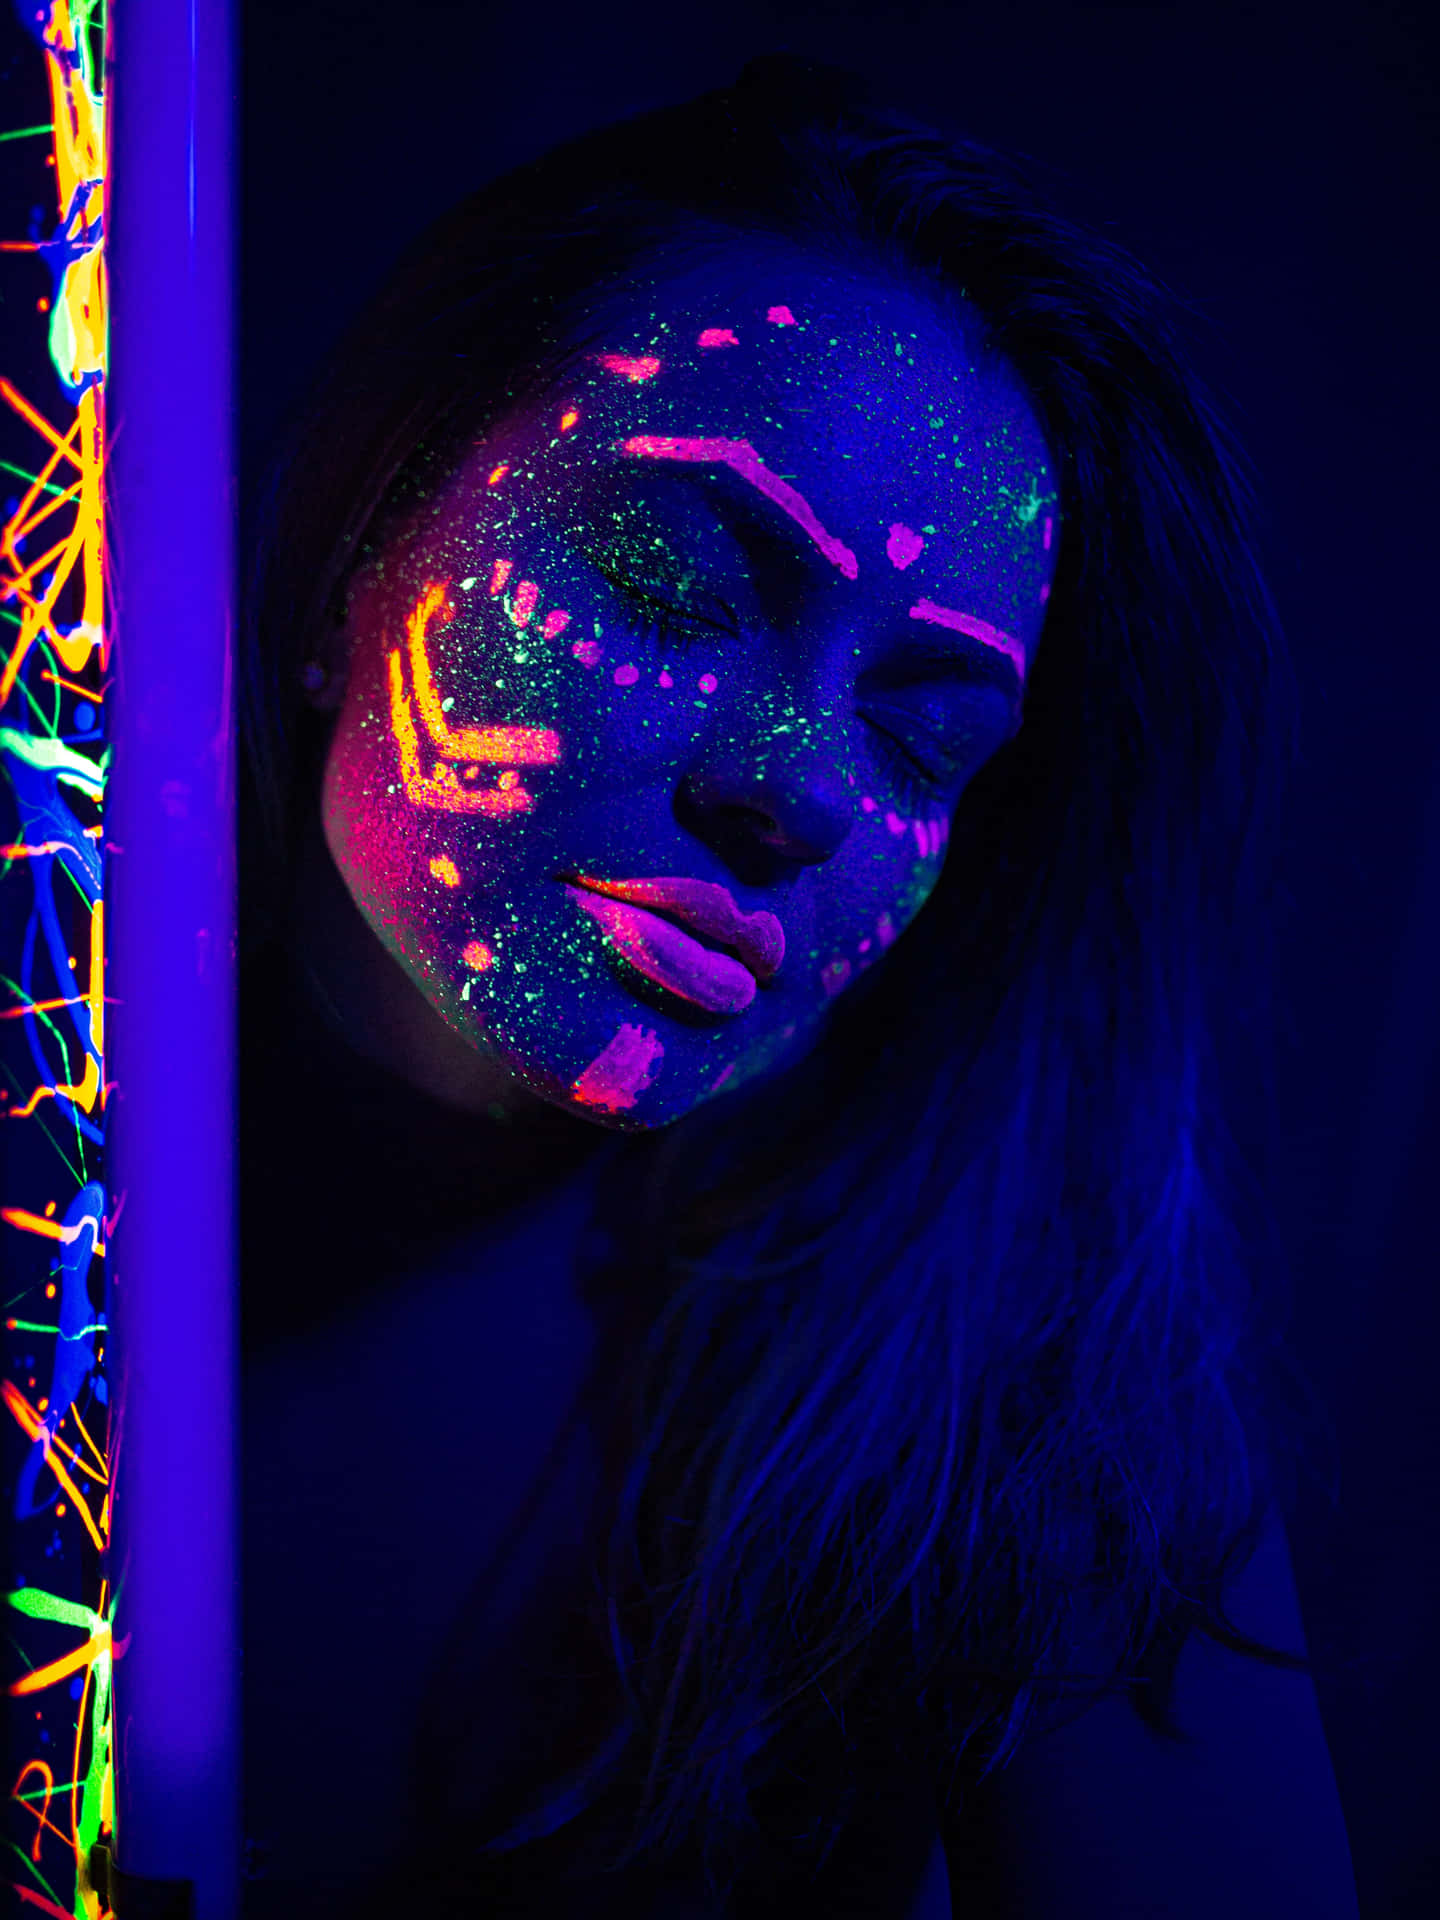 Neon_ Glow_ Makeup_ Under_ Black_ Light Wallpaper